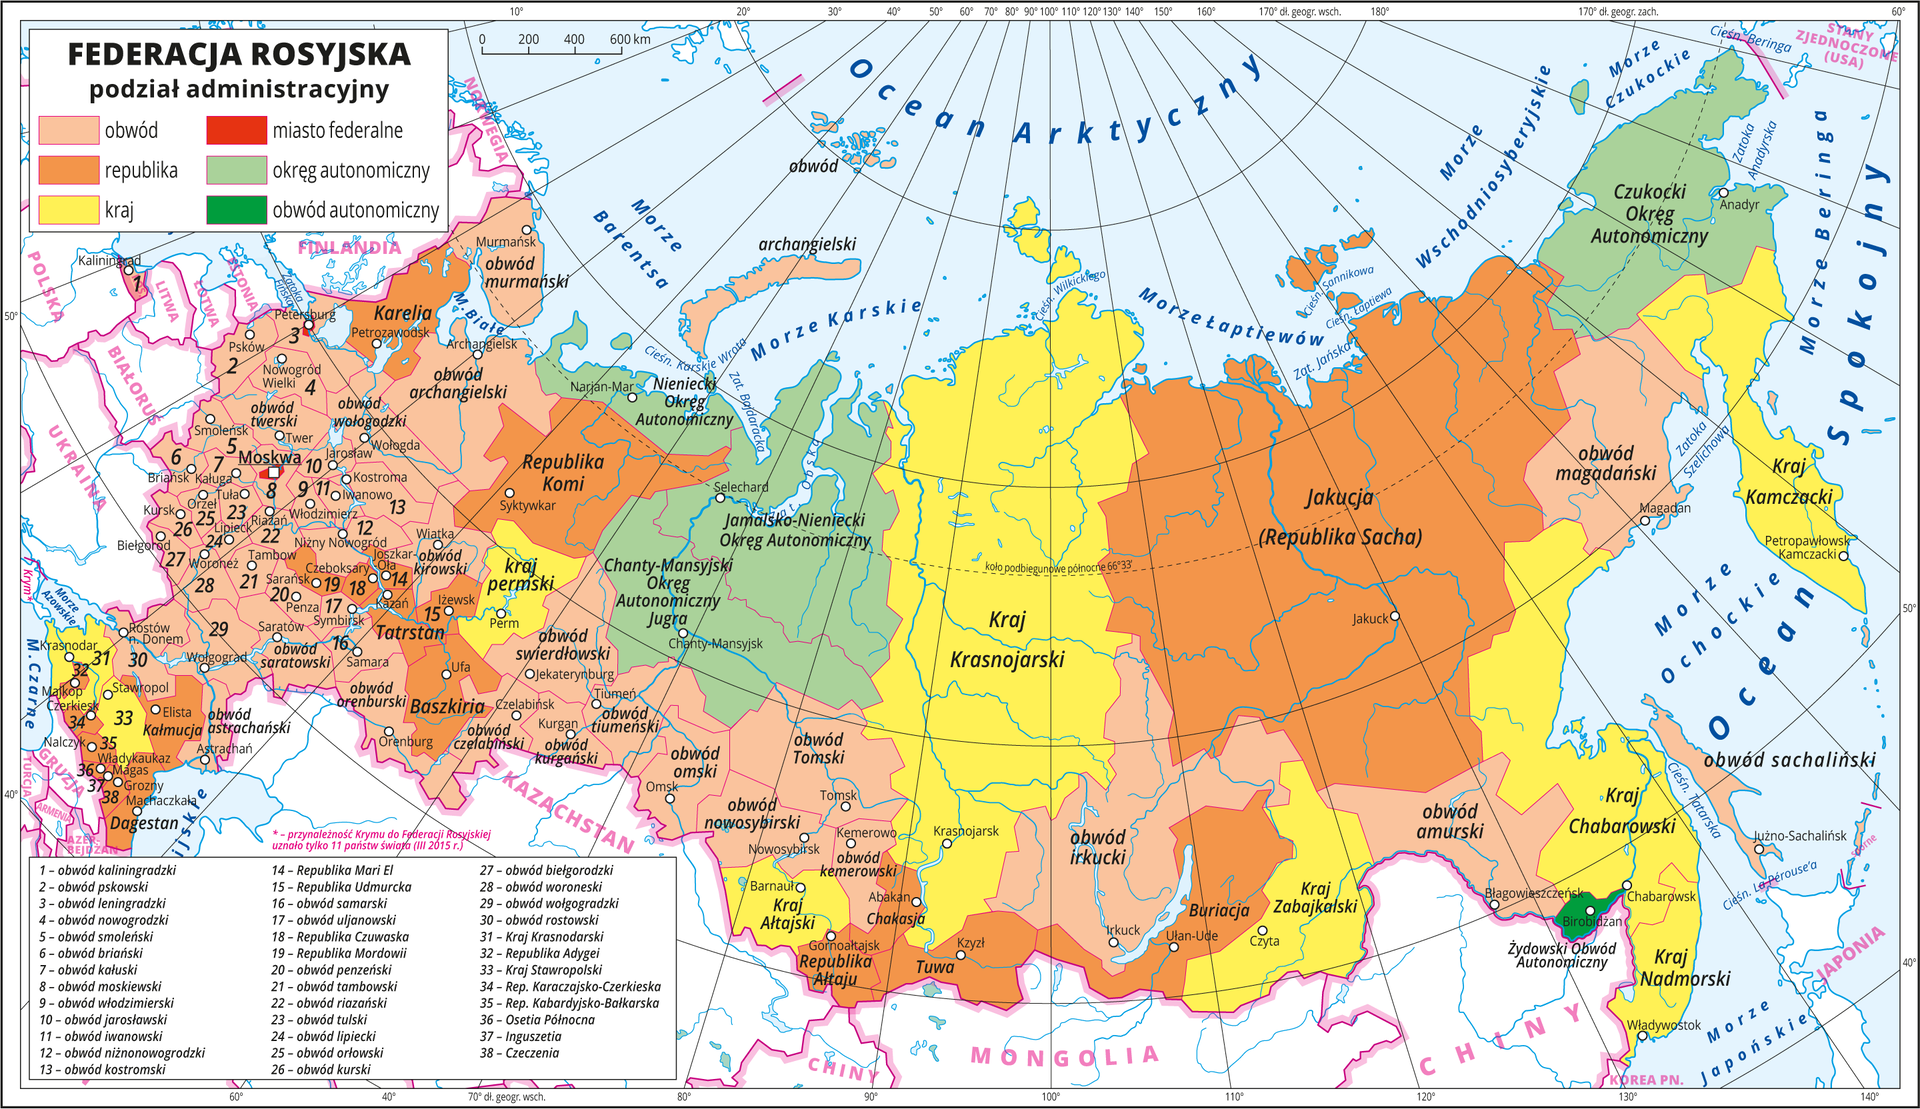 Ilustracja przedstawia mapę polityczną Federacji Rosyjskiej z podziałem na jednostki administracyjne. Kolorami wyróżniono następujące jednostki : obwody (44) , republiki (22), kraje (9), miasta federalne (3), okręgi autonomiczne (4), obwód autonomiczny (1). Na mapie opisano ich nazwy, a w części zachodniej, gdzie jednostek jest najwięcej i zajmują małe obszary opisano je numerami, które objaśniono w legendzie. W centrum i na wschodzie poszczególne jednostki administracyjne mają rozległe obszary. Białymi kropkami oznaczono główne miasta i opisano je. Mapa pokryta jest równoleżnikami i południkami. Dookoła mapy w białej ramce opisano współrzędne geograficzne co dwa stopnie.